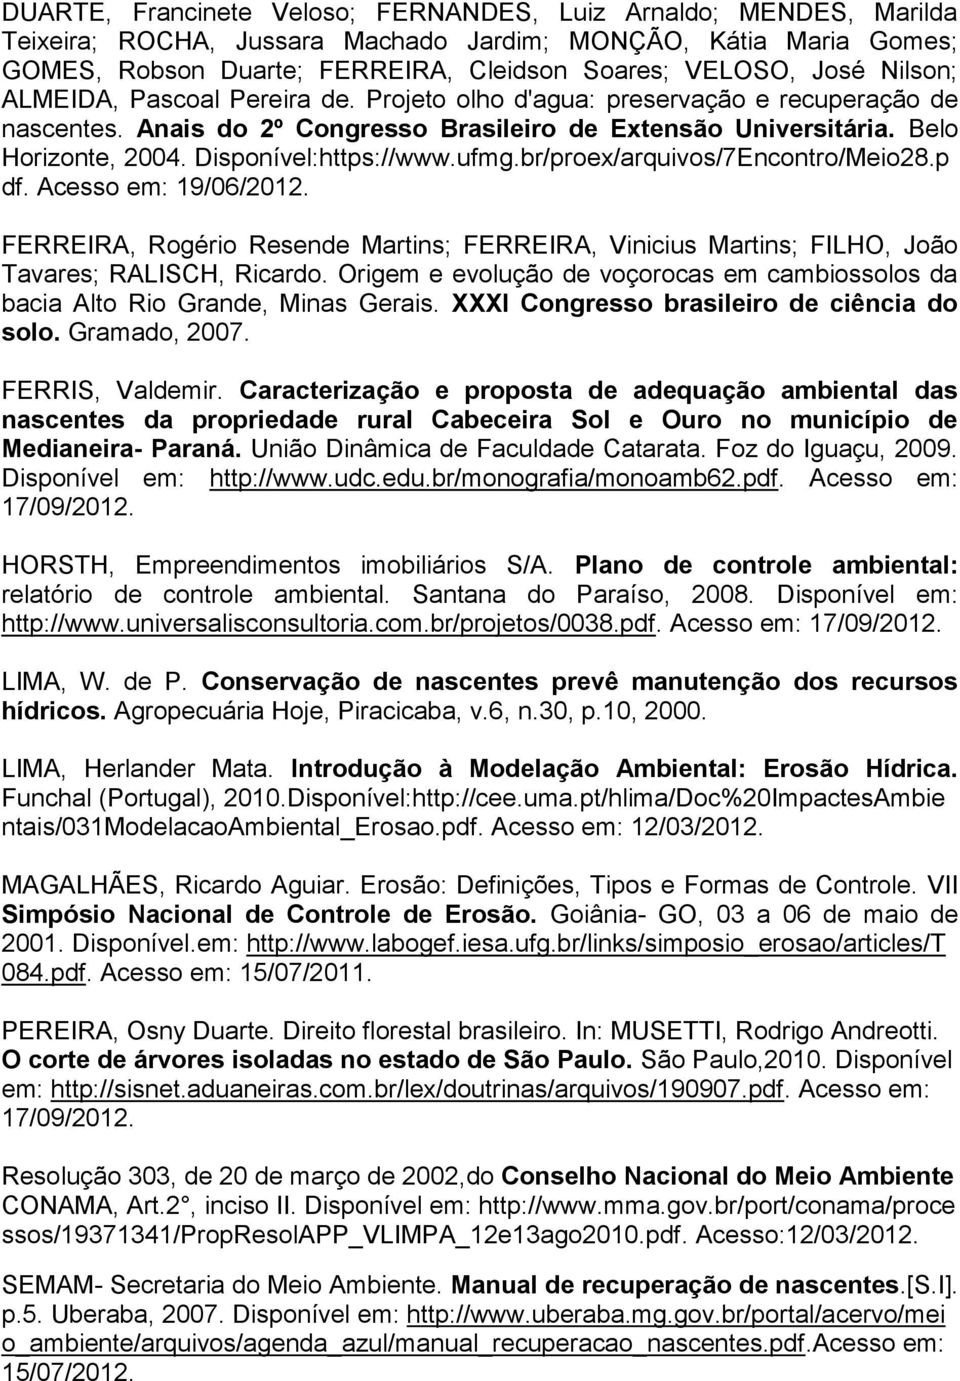 .Disponível:https://www.ufmg.br/proex/arquivos/7Encontro/Meio28.p df. Acesso em: 19/06/2012. FERREIRA, Rogério Resende Martins; FERREIRA, Vinicius Martins; FILHO, João Tavares; RALISCH, Ricardo.